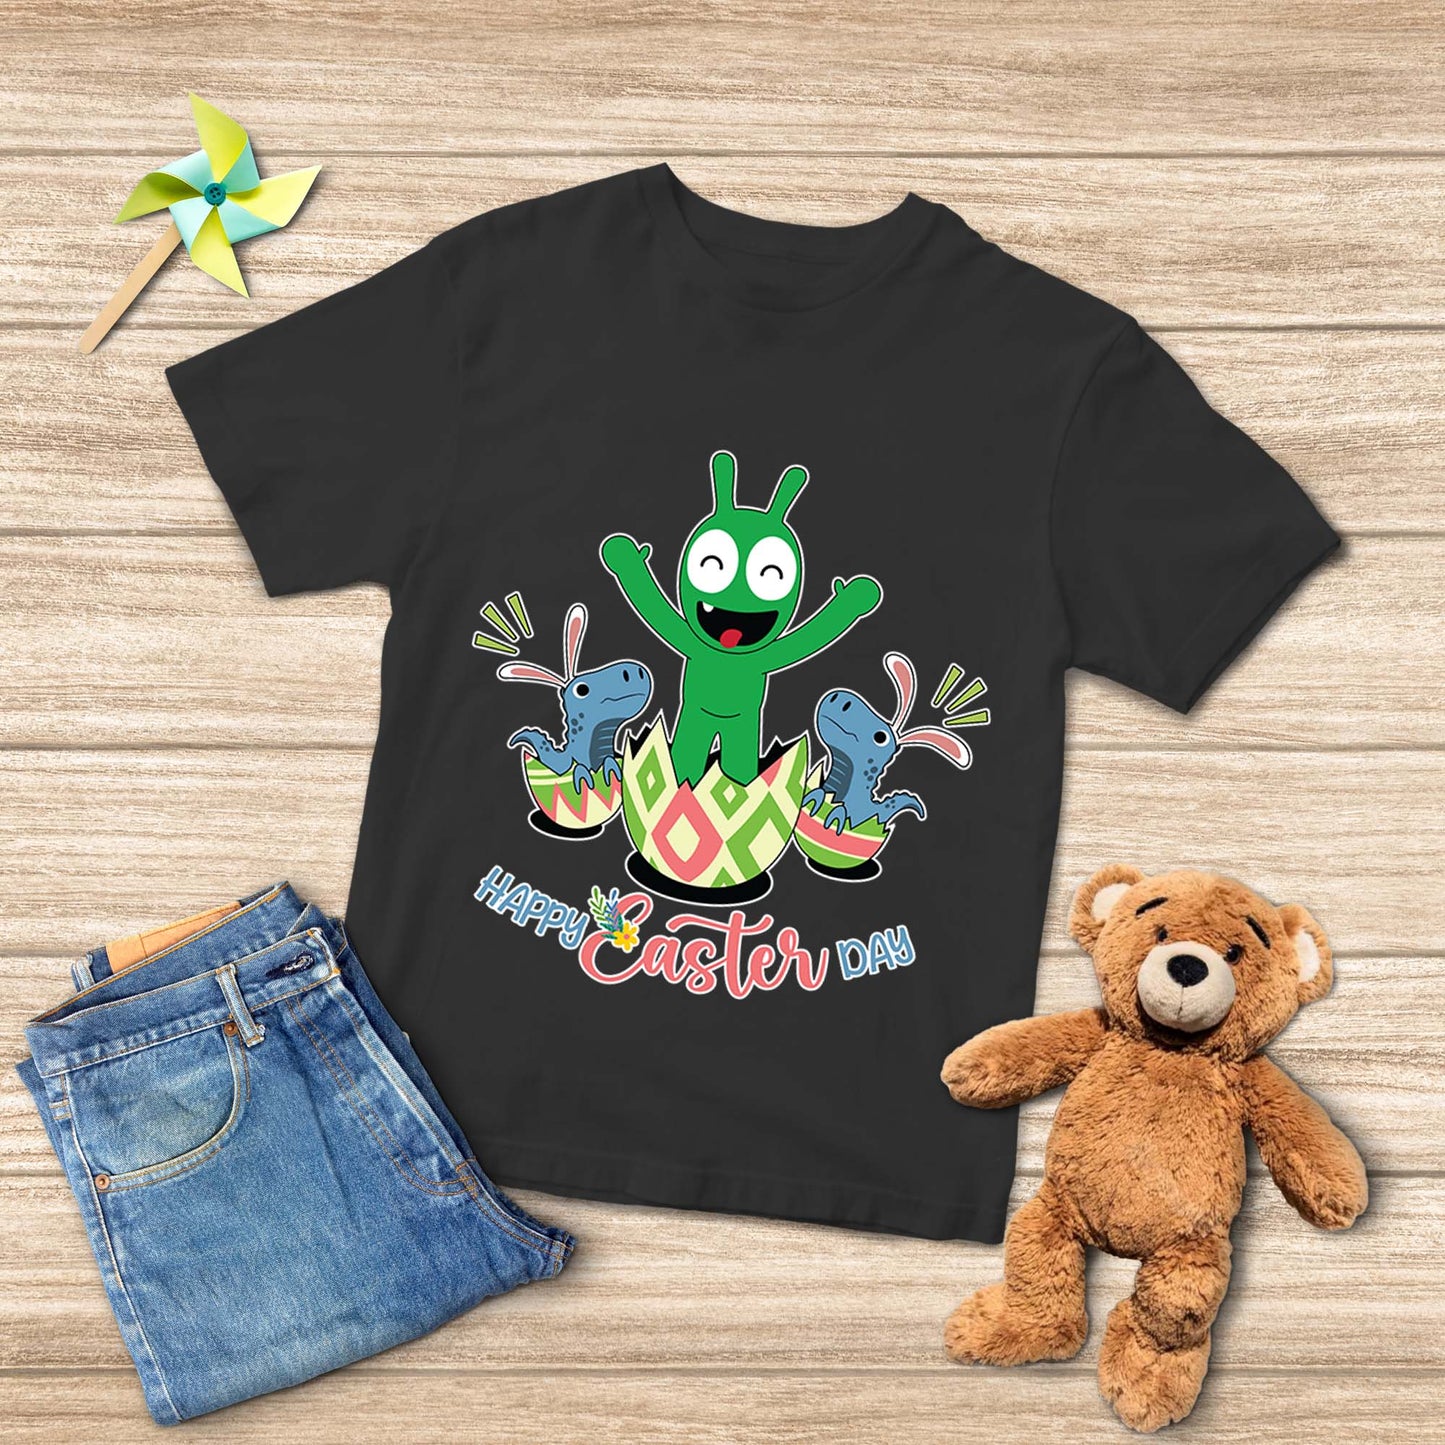 Pea Pea aparece el día de Pascua con la camiseta juvenil T Rex